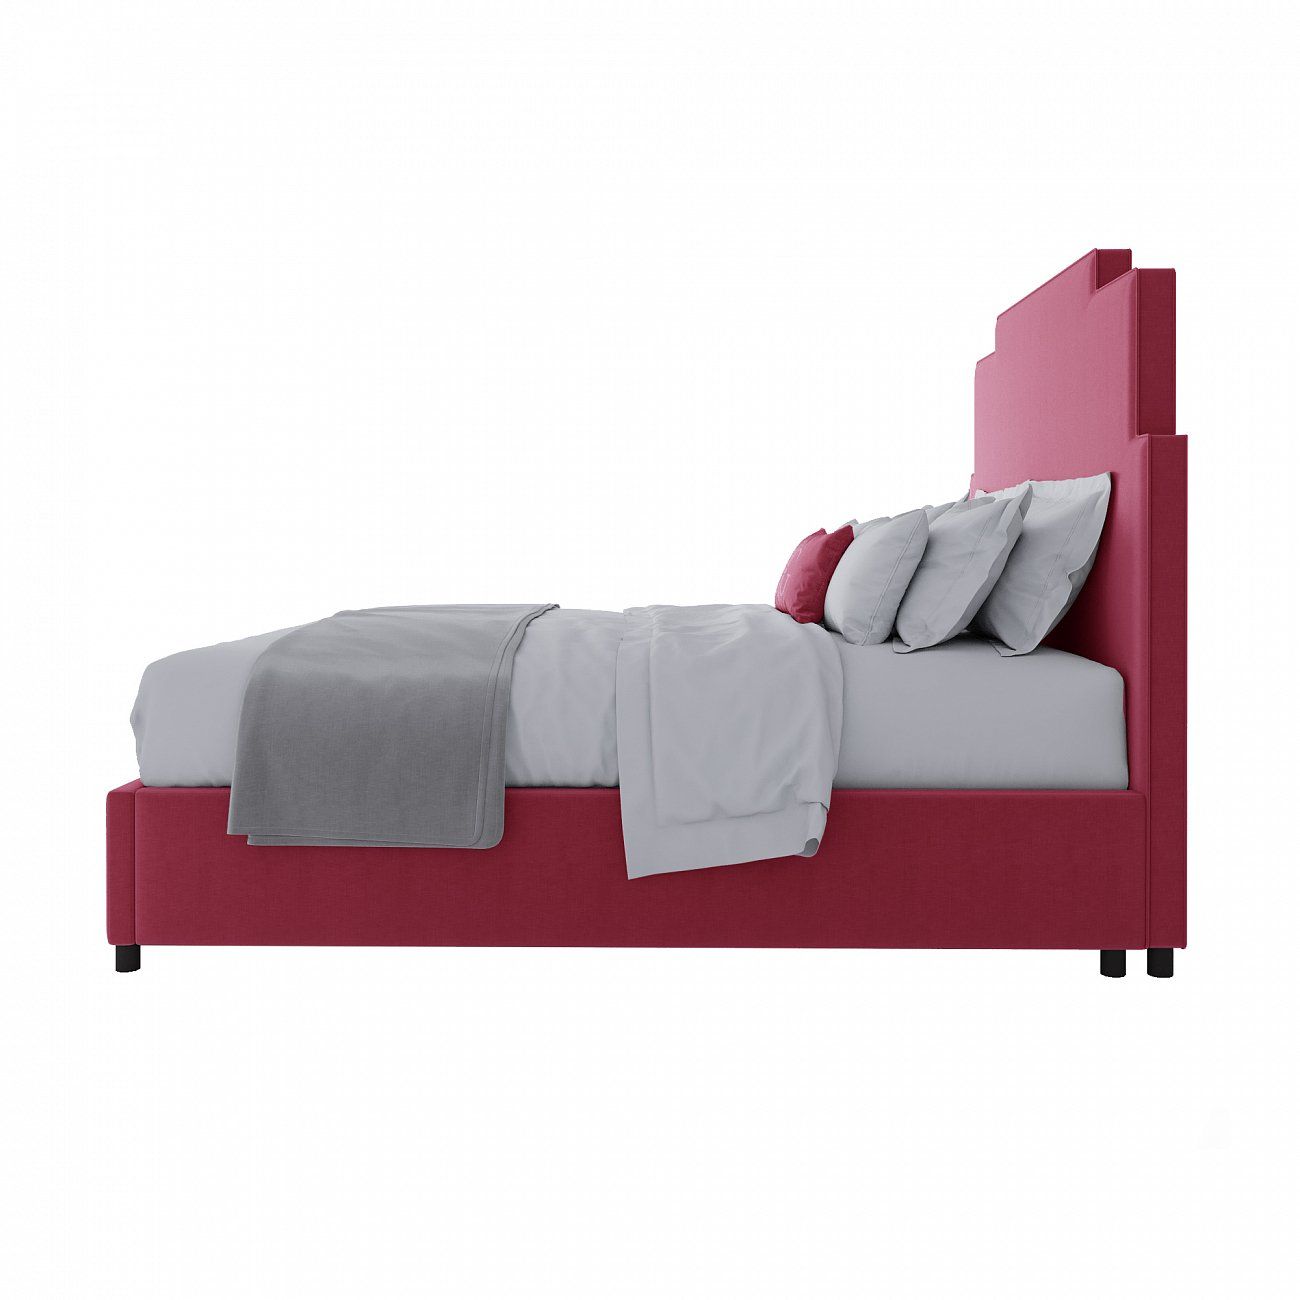 Кровать двуспальная 160x200 см розовая Paxton Bed Dusty Rose